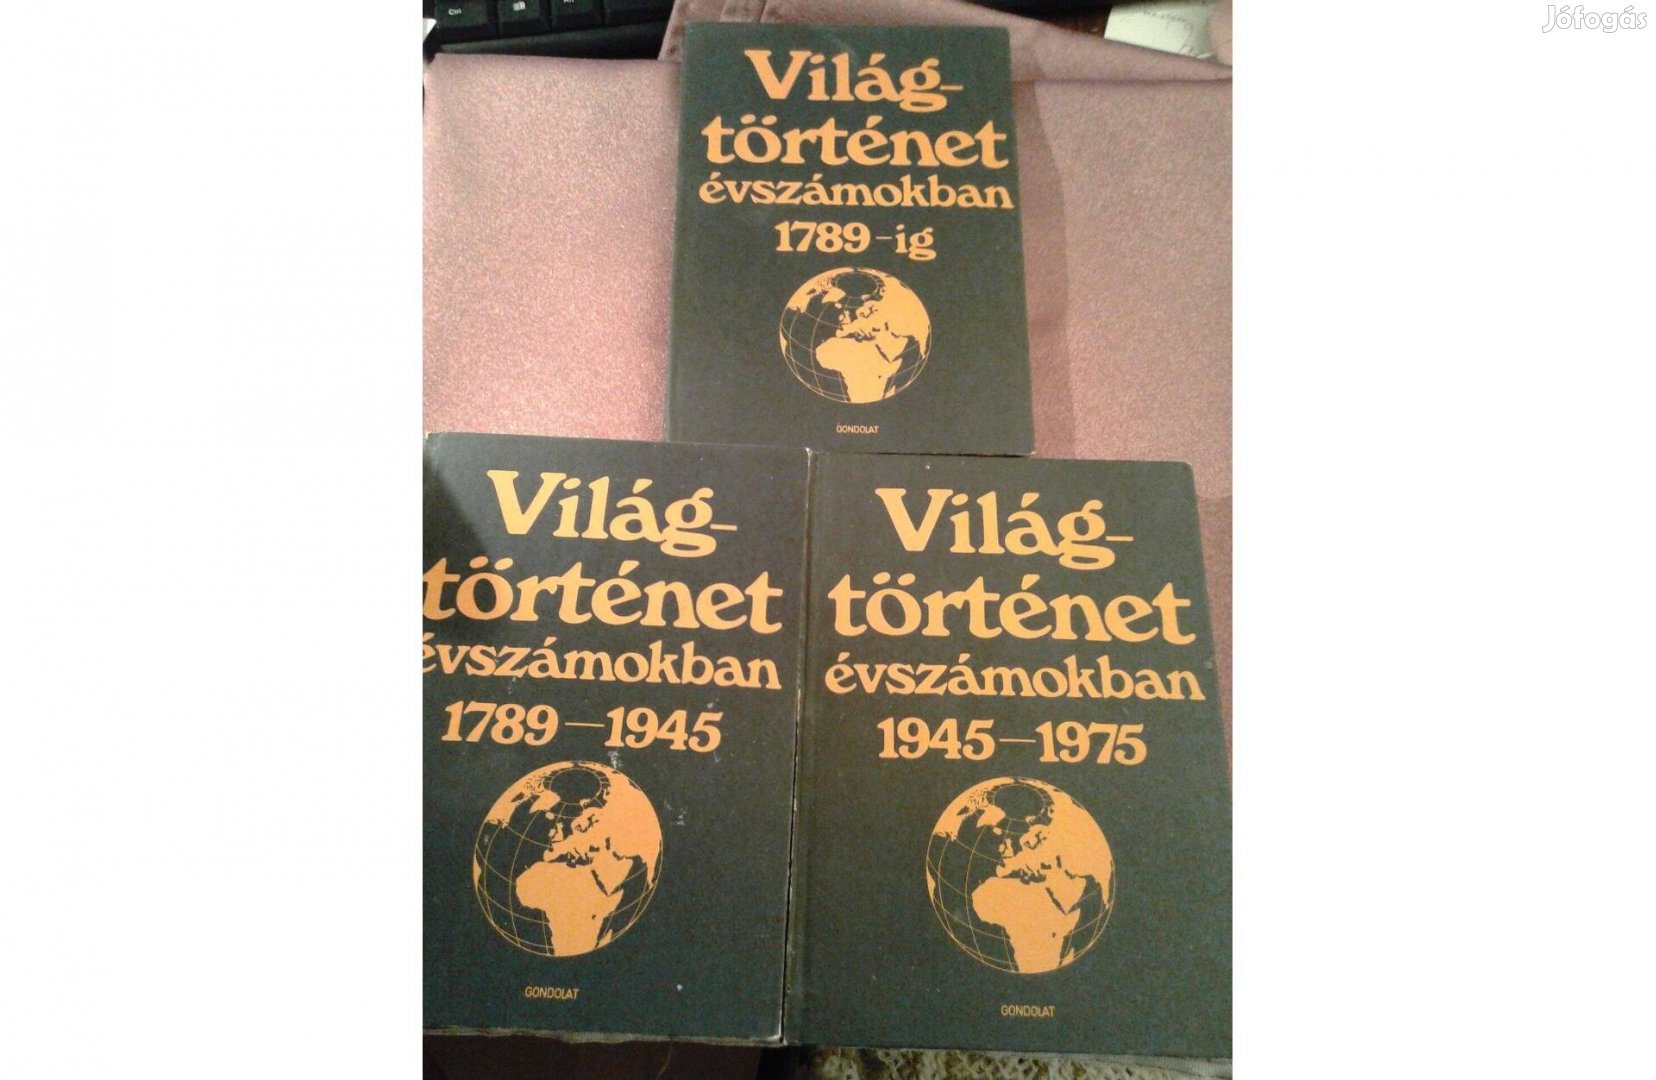 Világtörténet évszámokban 1975-ig 3 kötet szinte ingye